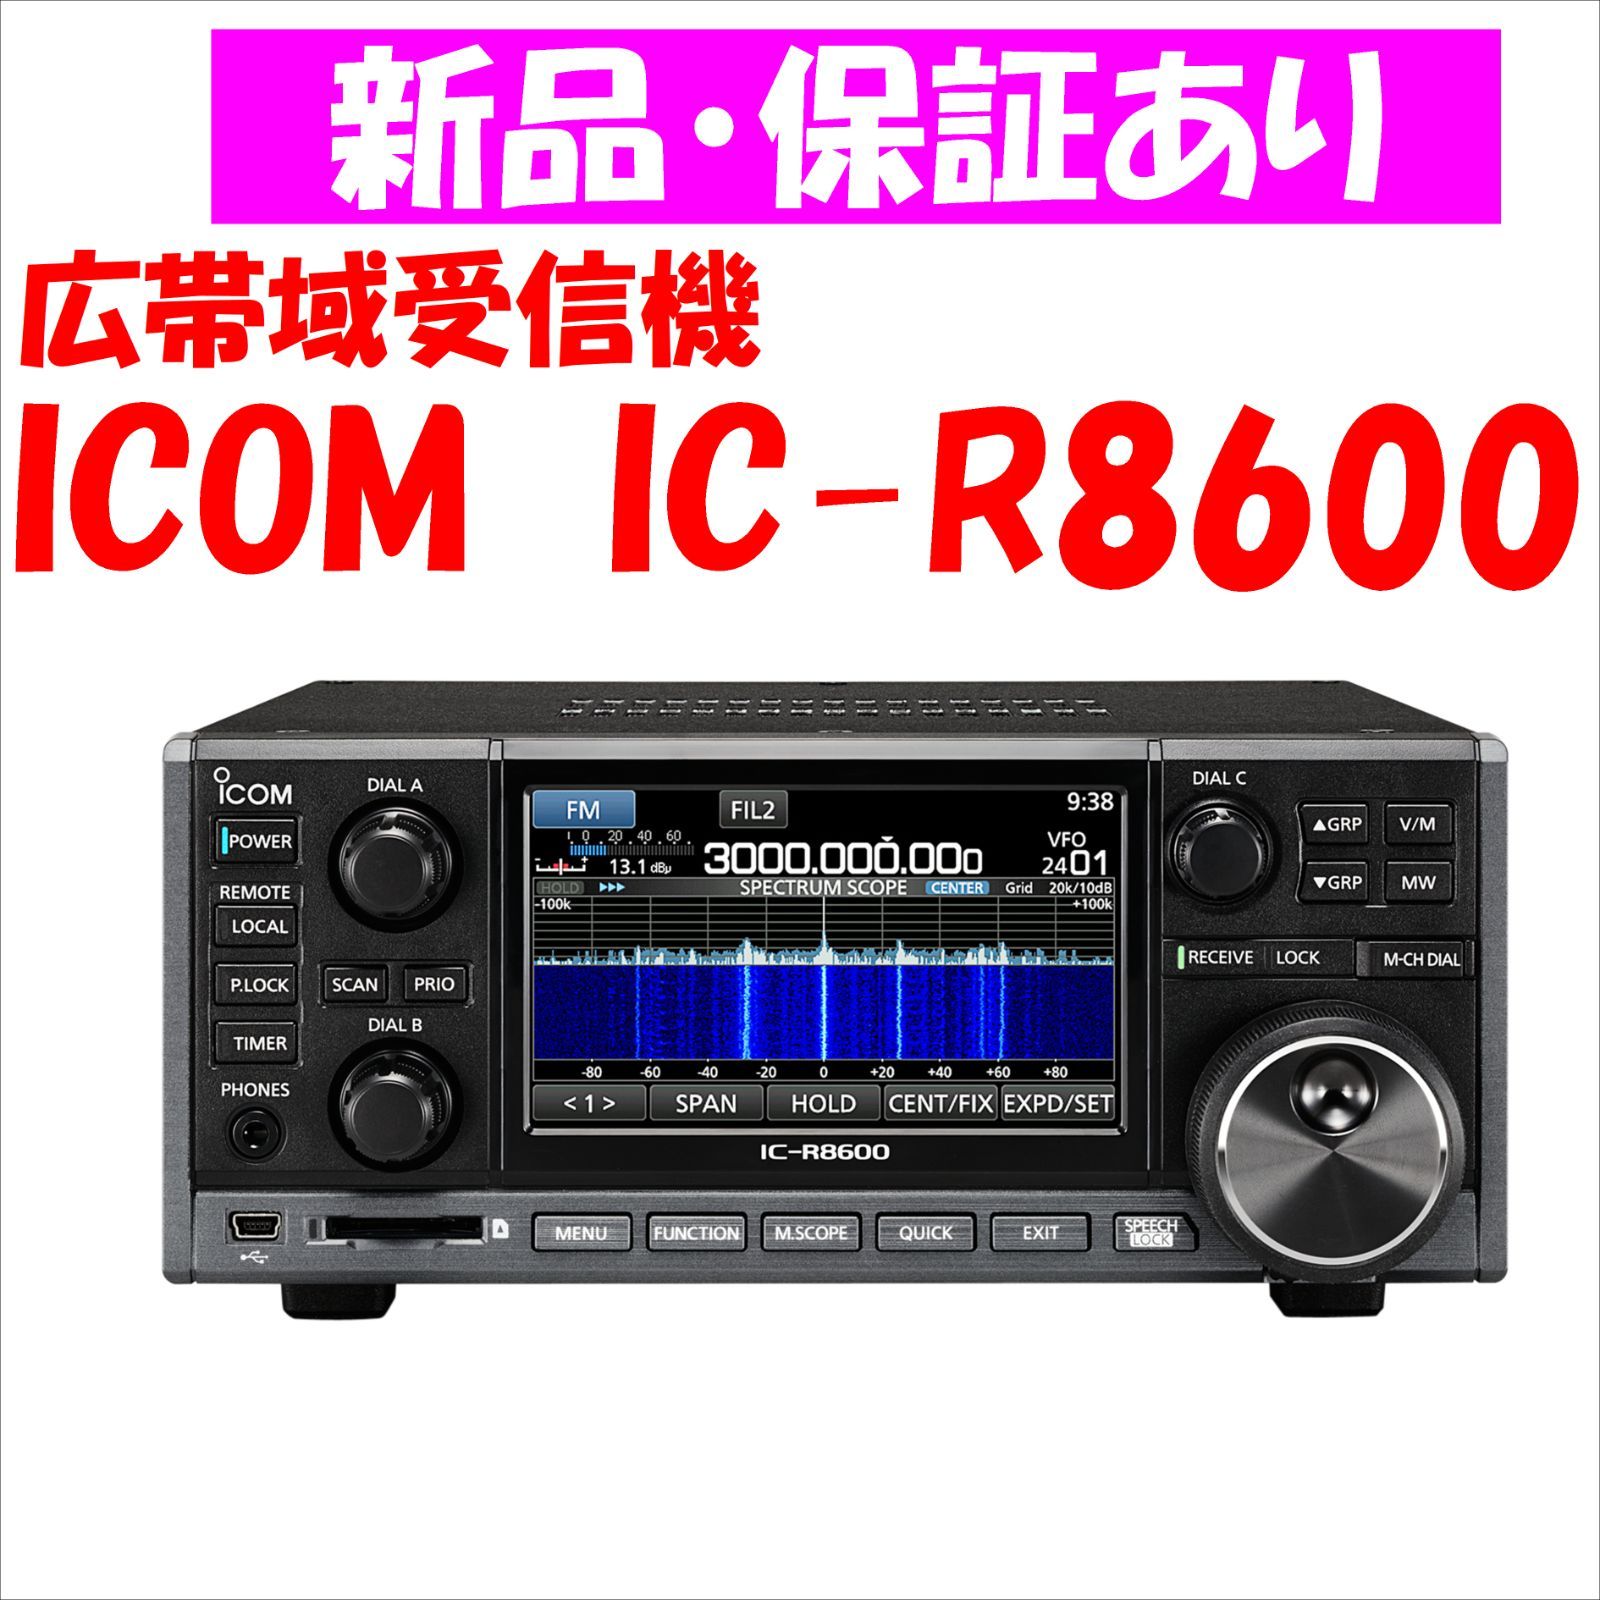 通販 銀座 IC-R8600 コミュニケーションレシーバー 10kHz～3GHz 受信機